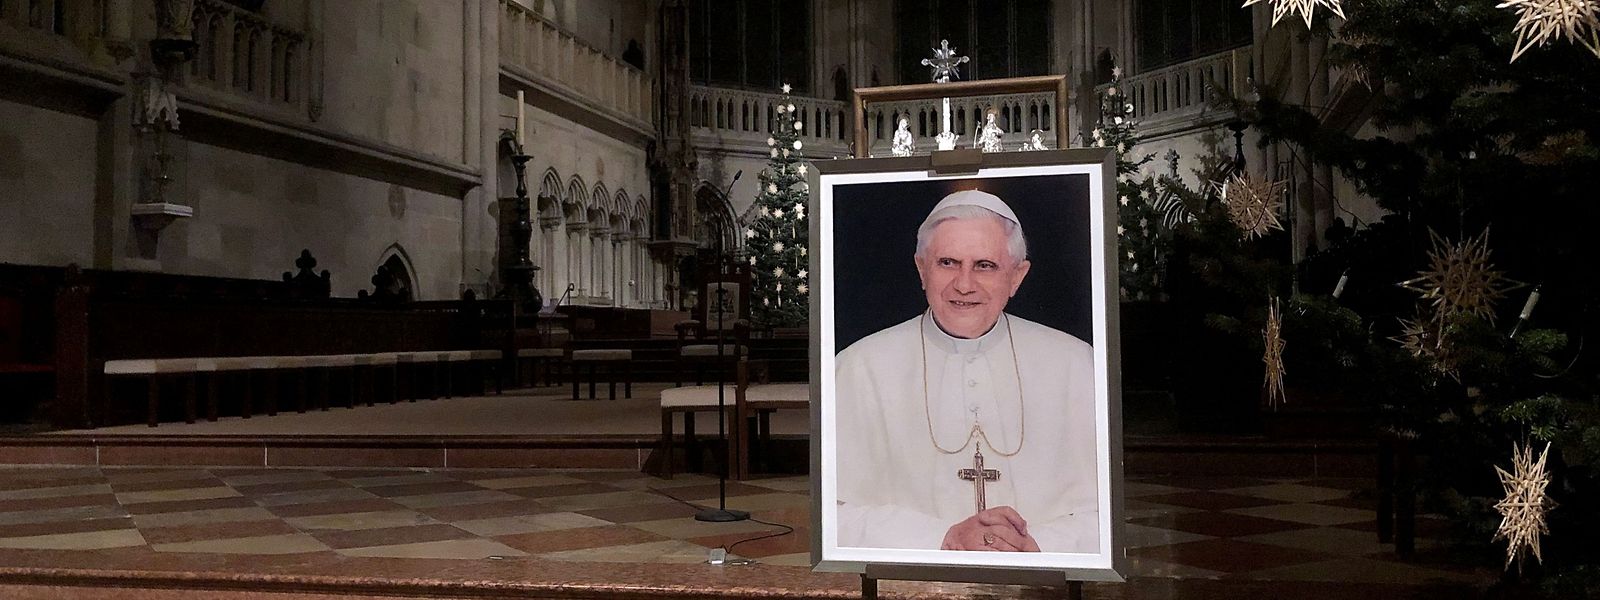 Innerhalb der letzten Tage hatte sich der Gesundheitszustand des emeritierten Papstes, Benedikt XVI., verschlechtert. Papst Franziskus hatte die Gläubigen um ein „spezielles Gebet“ für seinen Vorgänger gebeten, dieser sei „sehr krank“. 